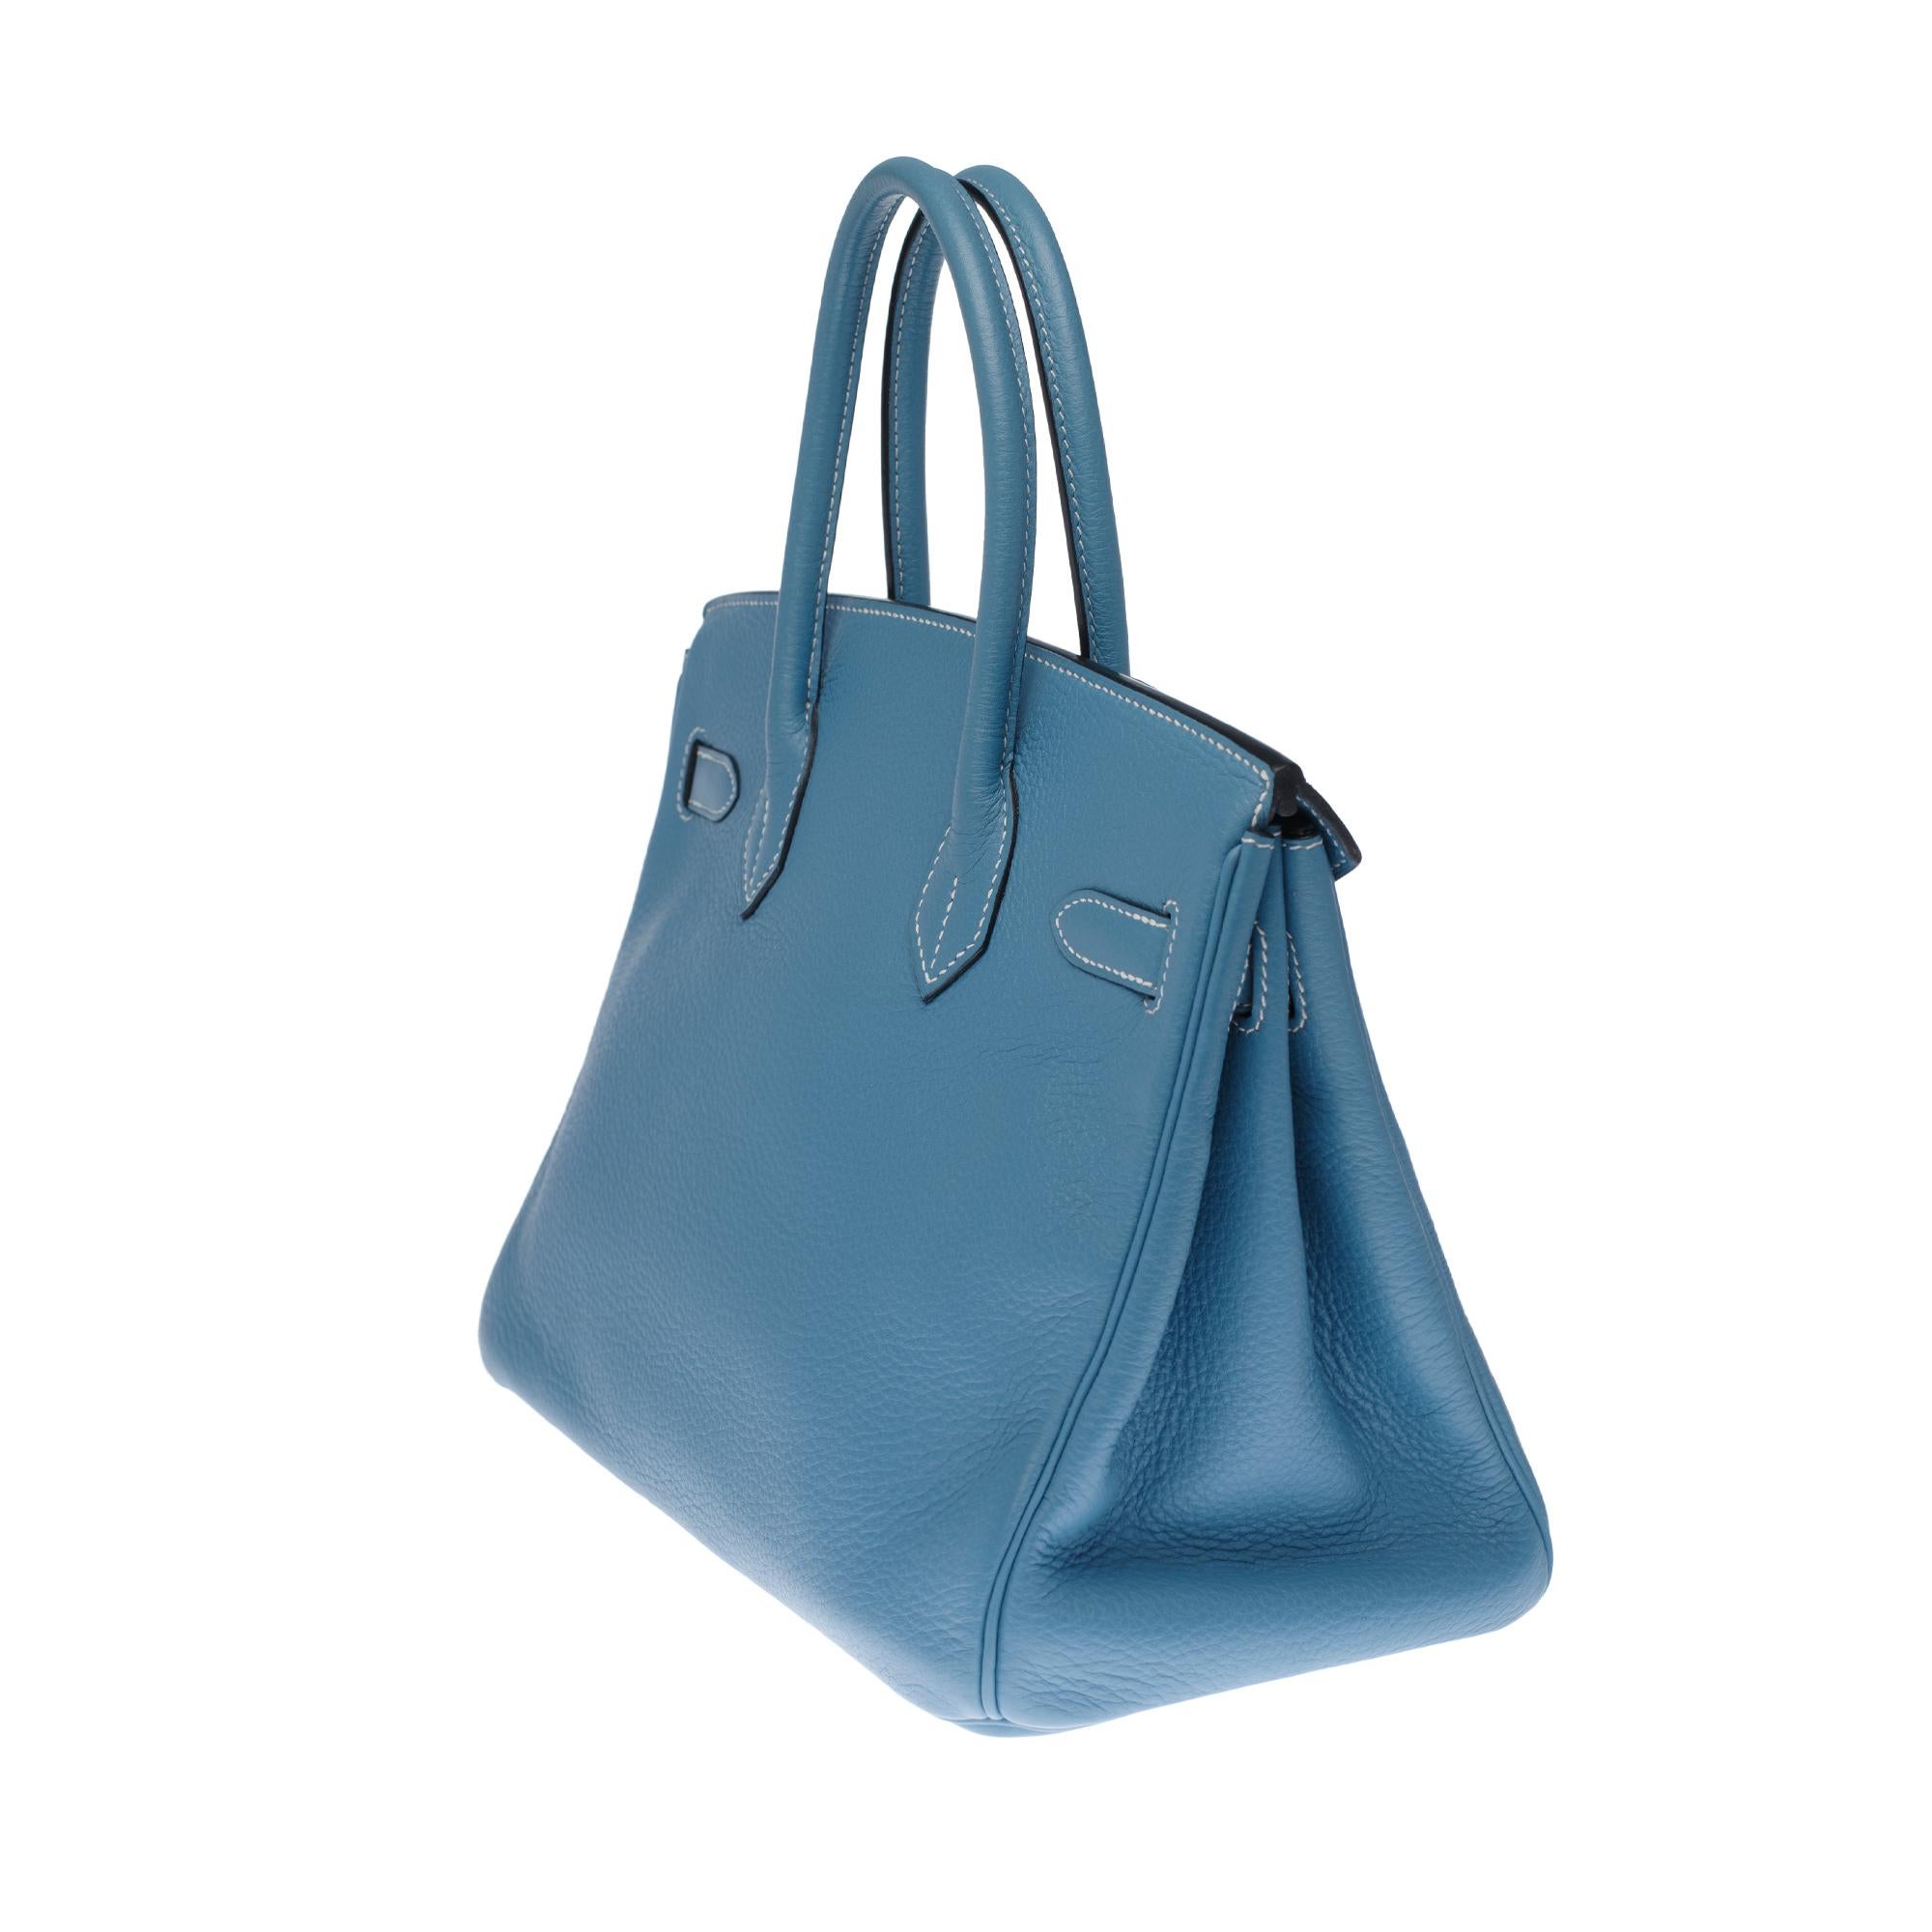 Hermès Birkin 30 handbag in Togo blue jean leather, PHW In Excellent Condition In Paris, IDF